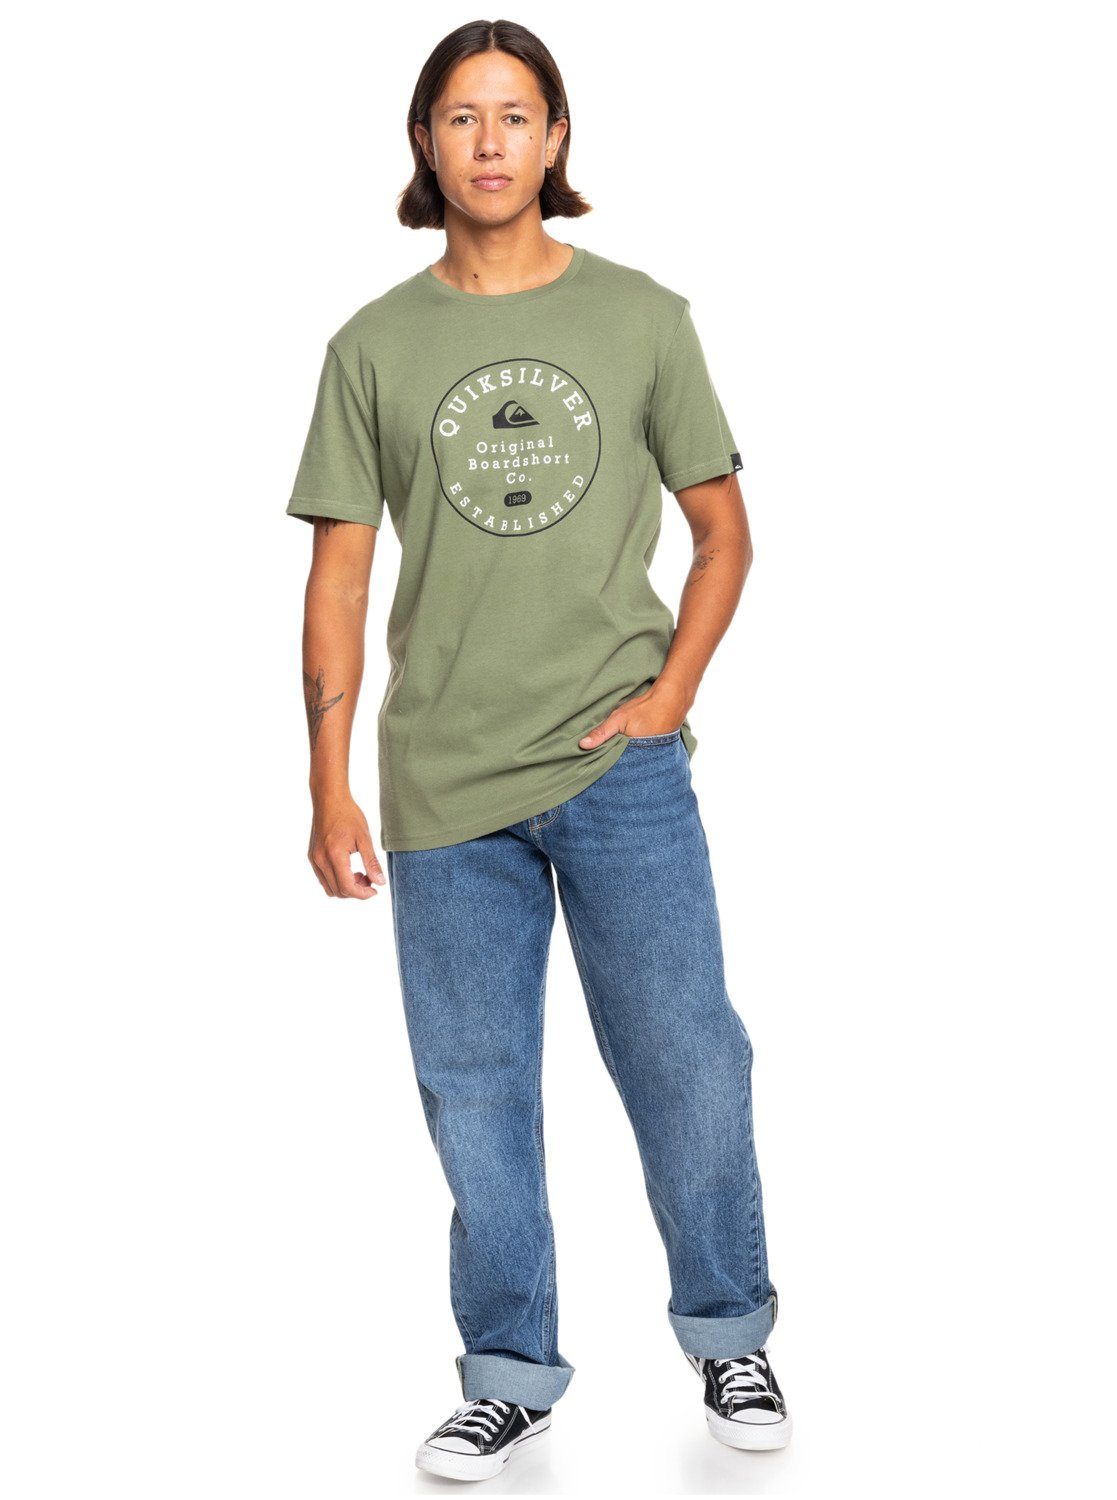 Leaf Four Trim Quiksilver Circle Clover T-Shirt